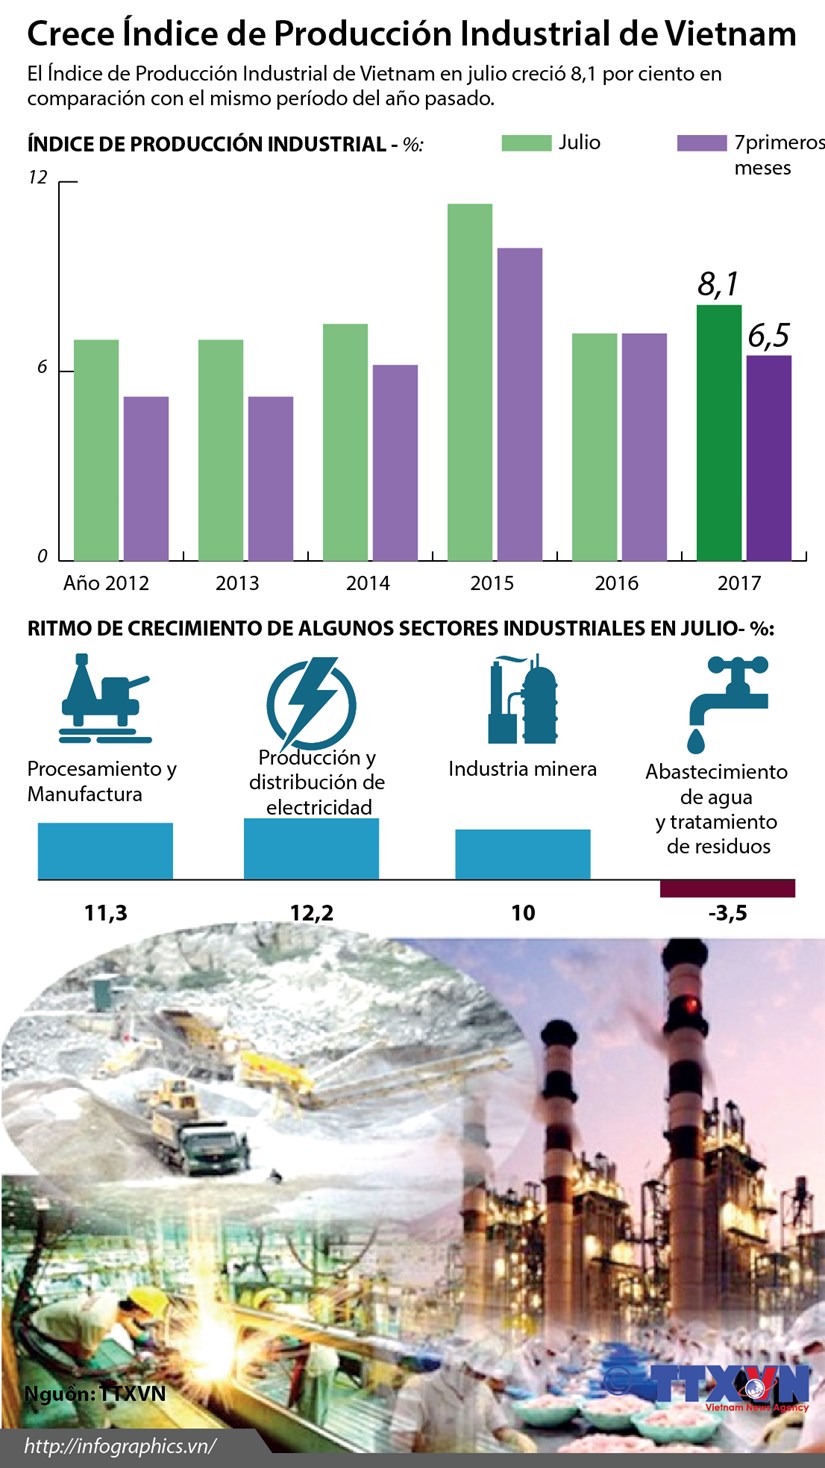 [Infografia] Crece Indice de Produccion Industrial de Vietnam hinh anh 1